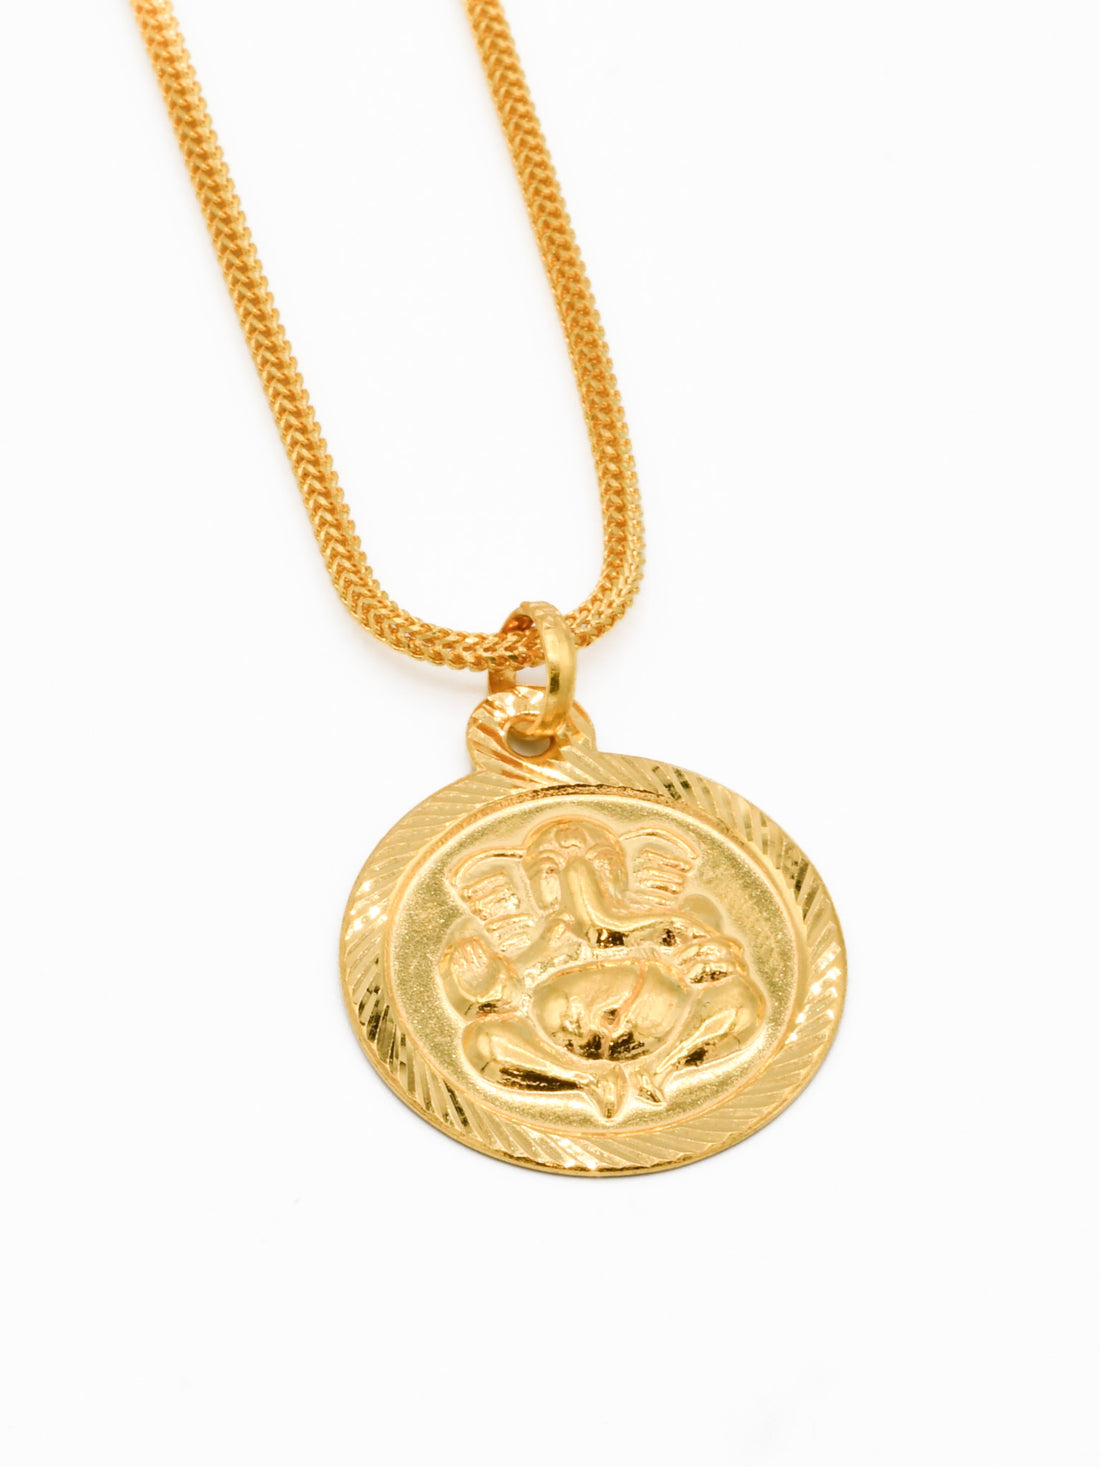 22ct Gold Ganesh Pendant - Roop Darshan